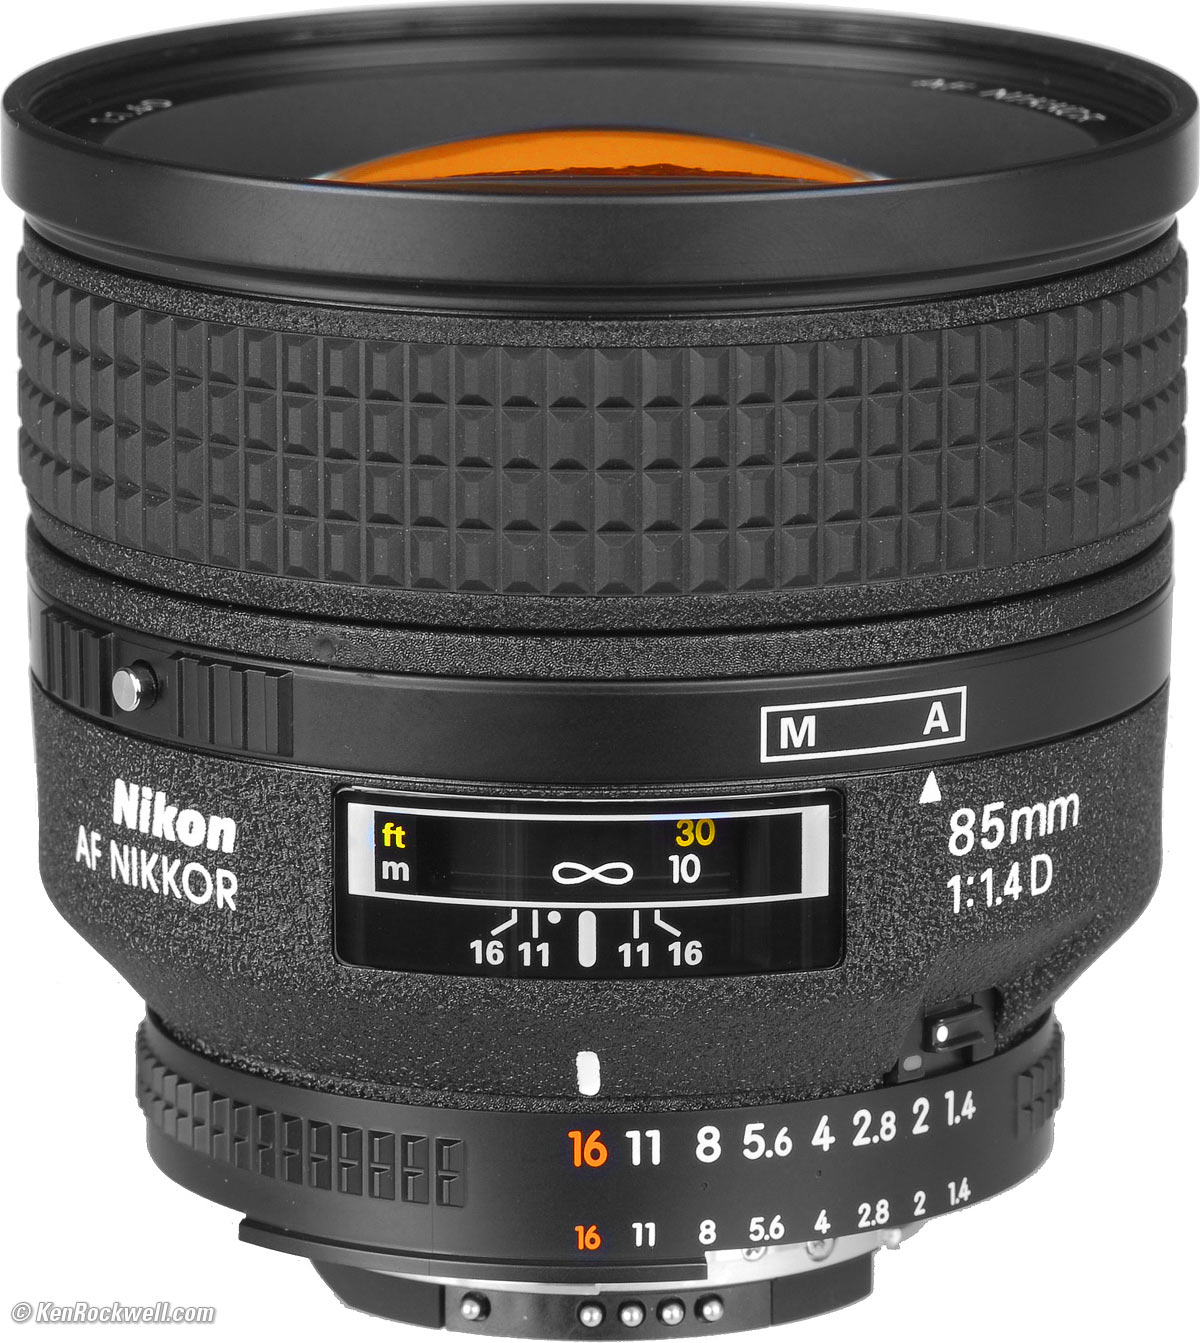 Nikon AF NIKKOR 85mm F1.4D